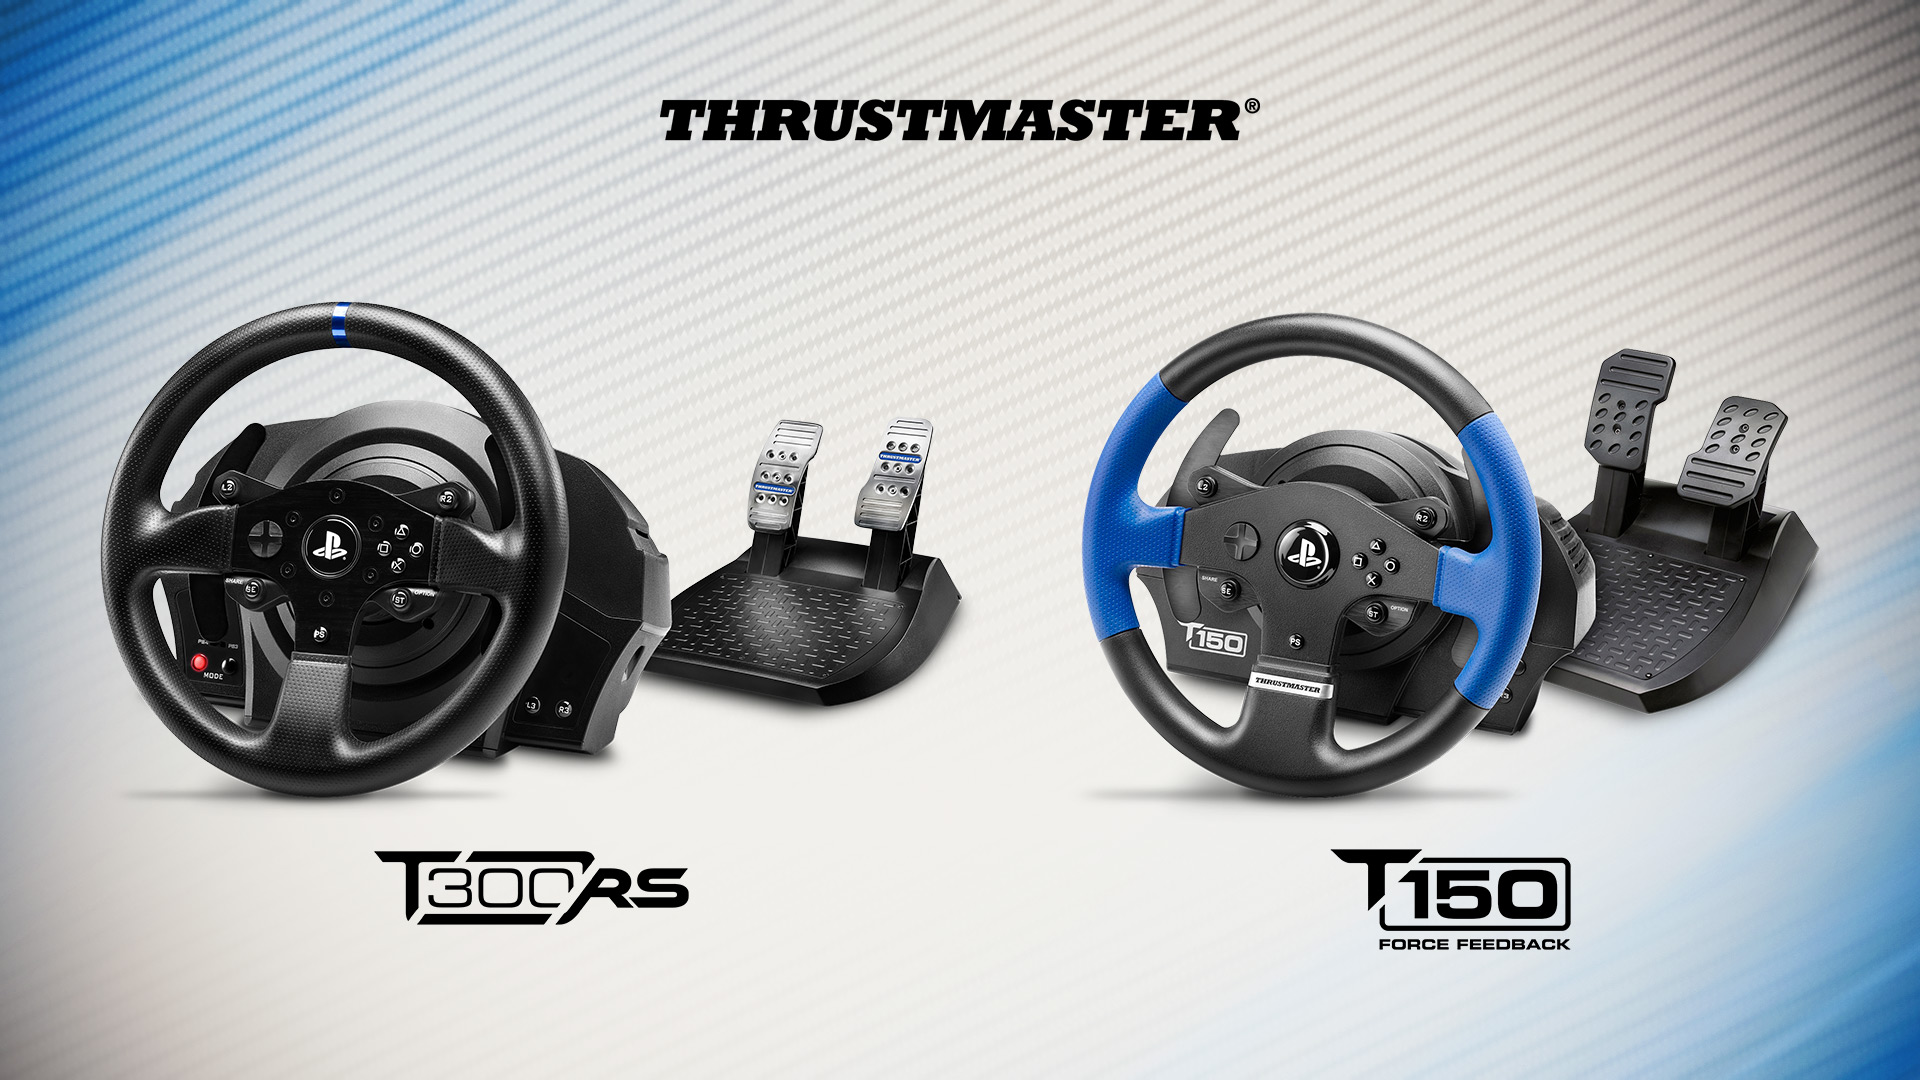 Staň se profesionálním jezdcem s produkty Thrustmaster 124481